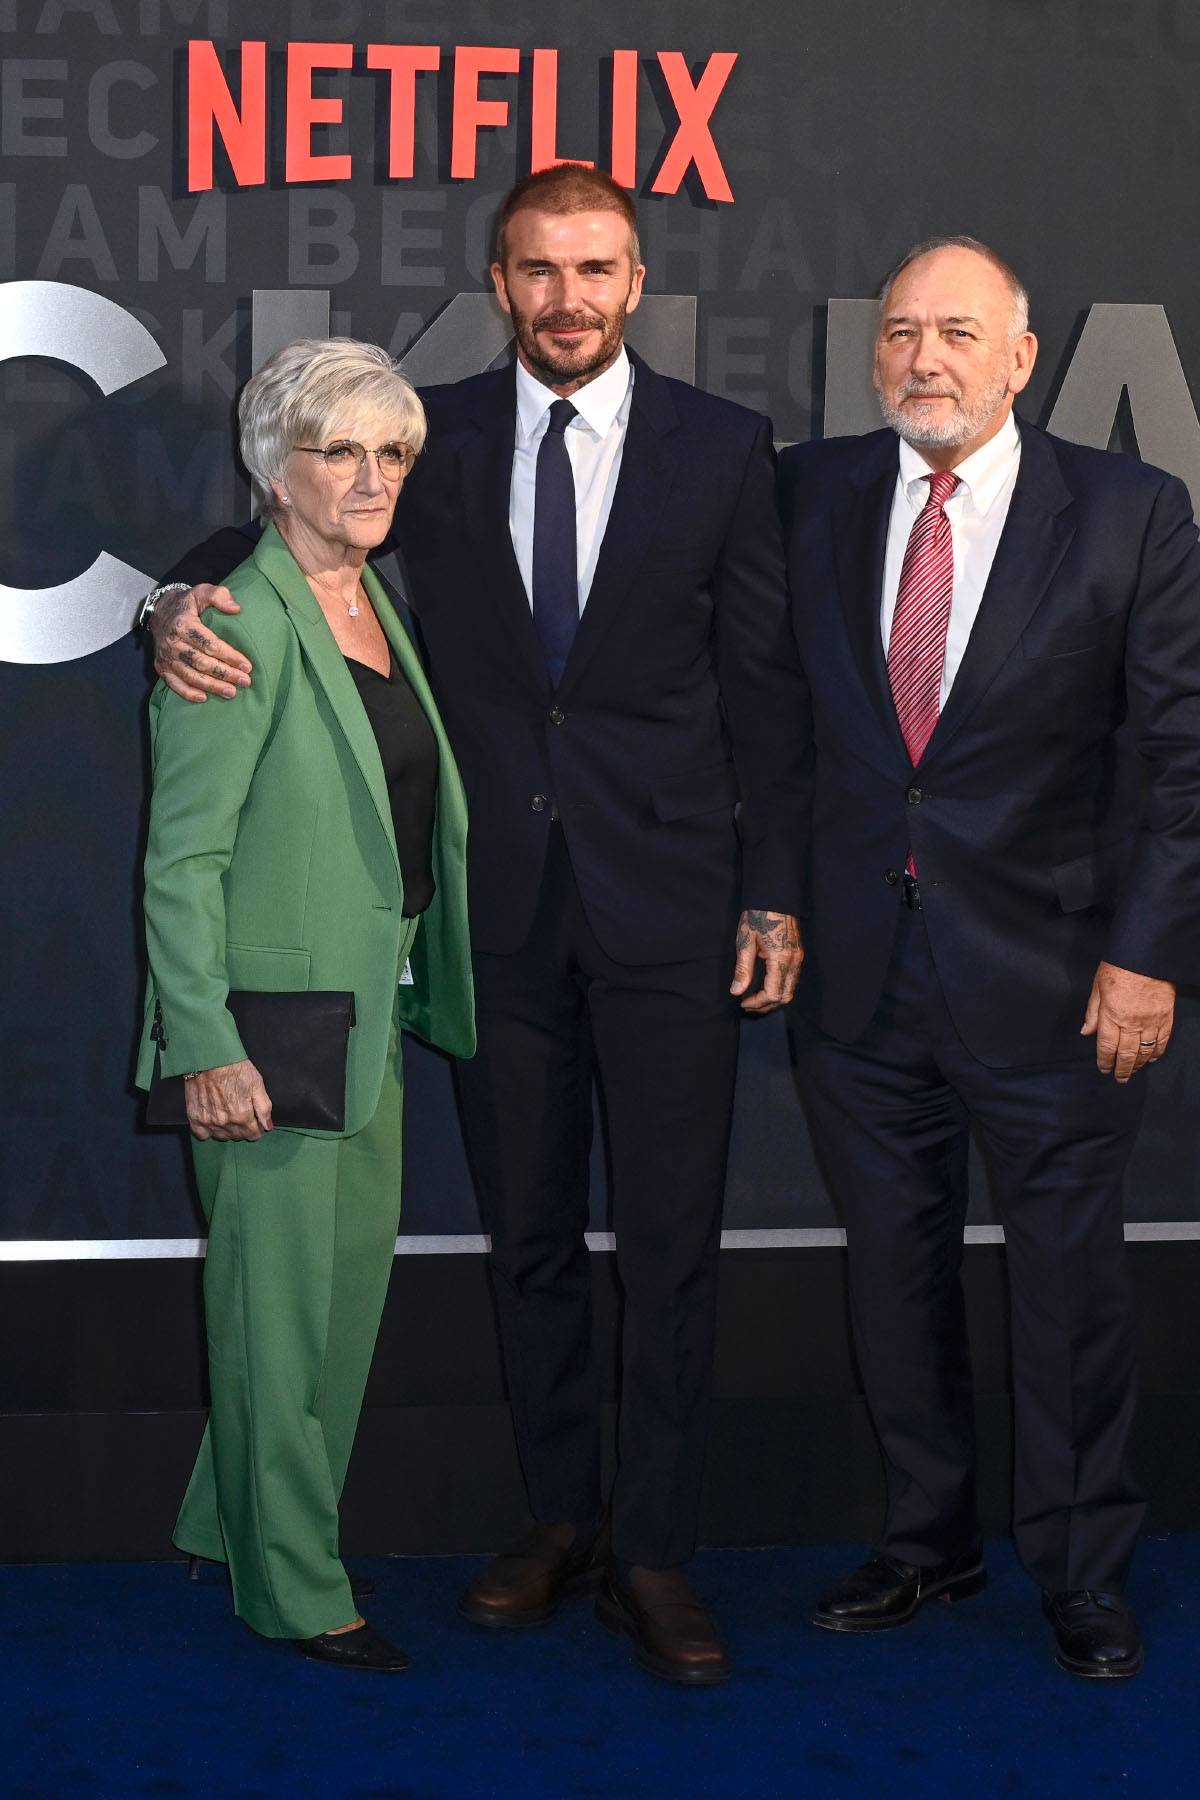 David Beckham z rodzicami na premierze serialu Netflixa